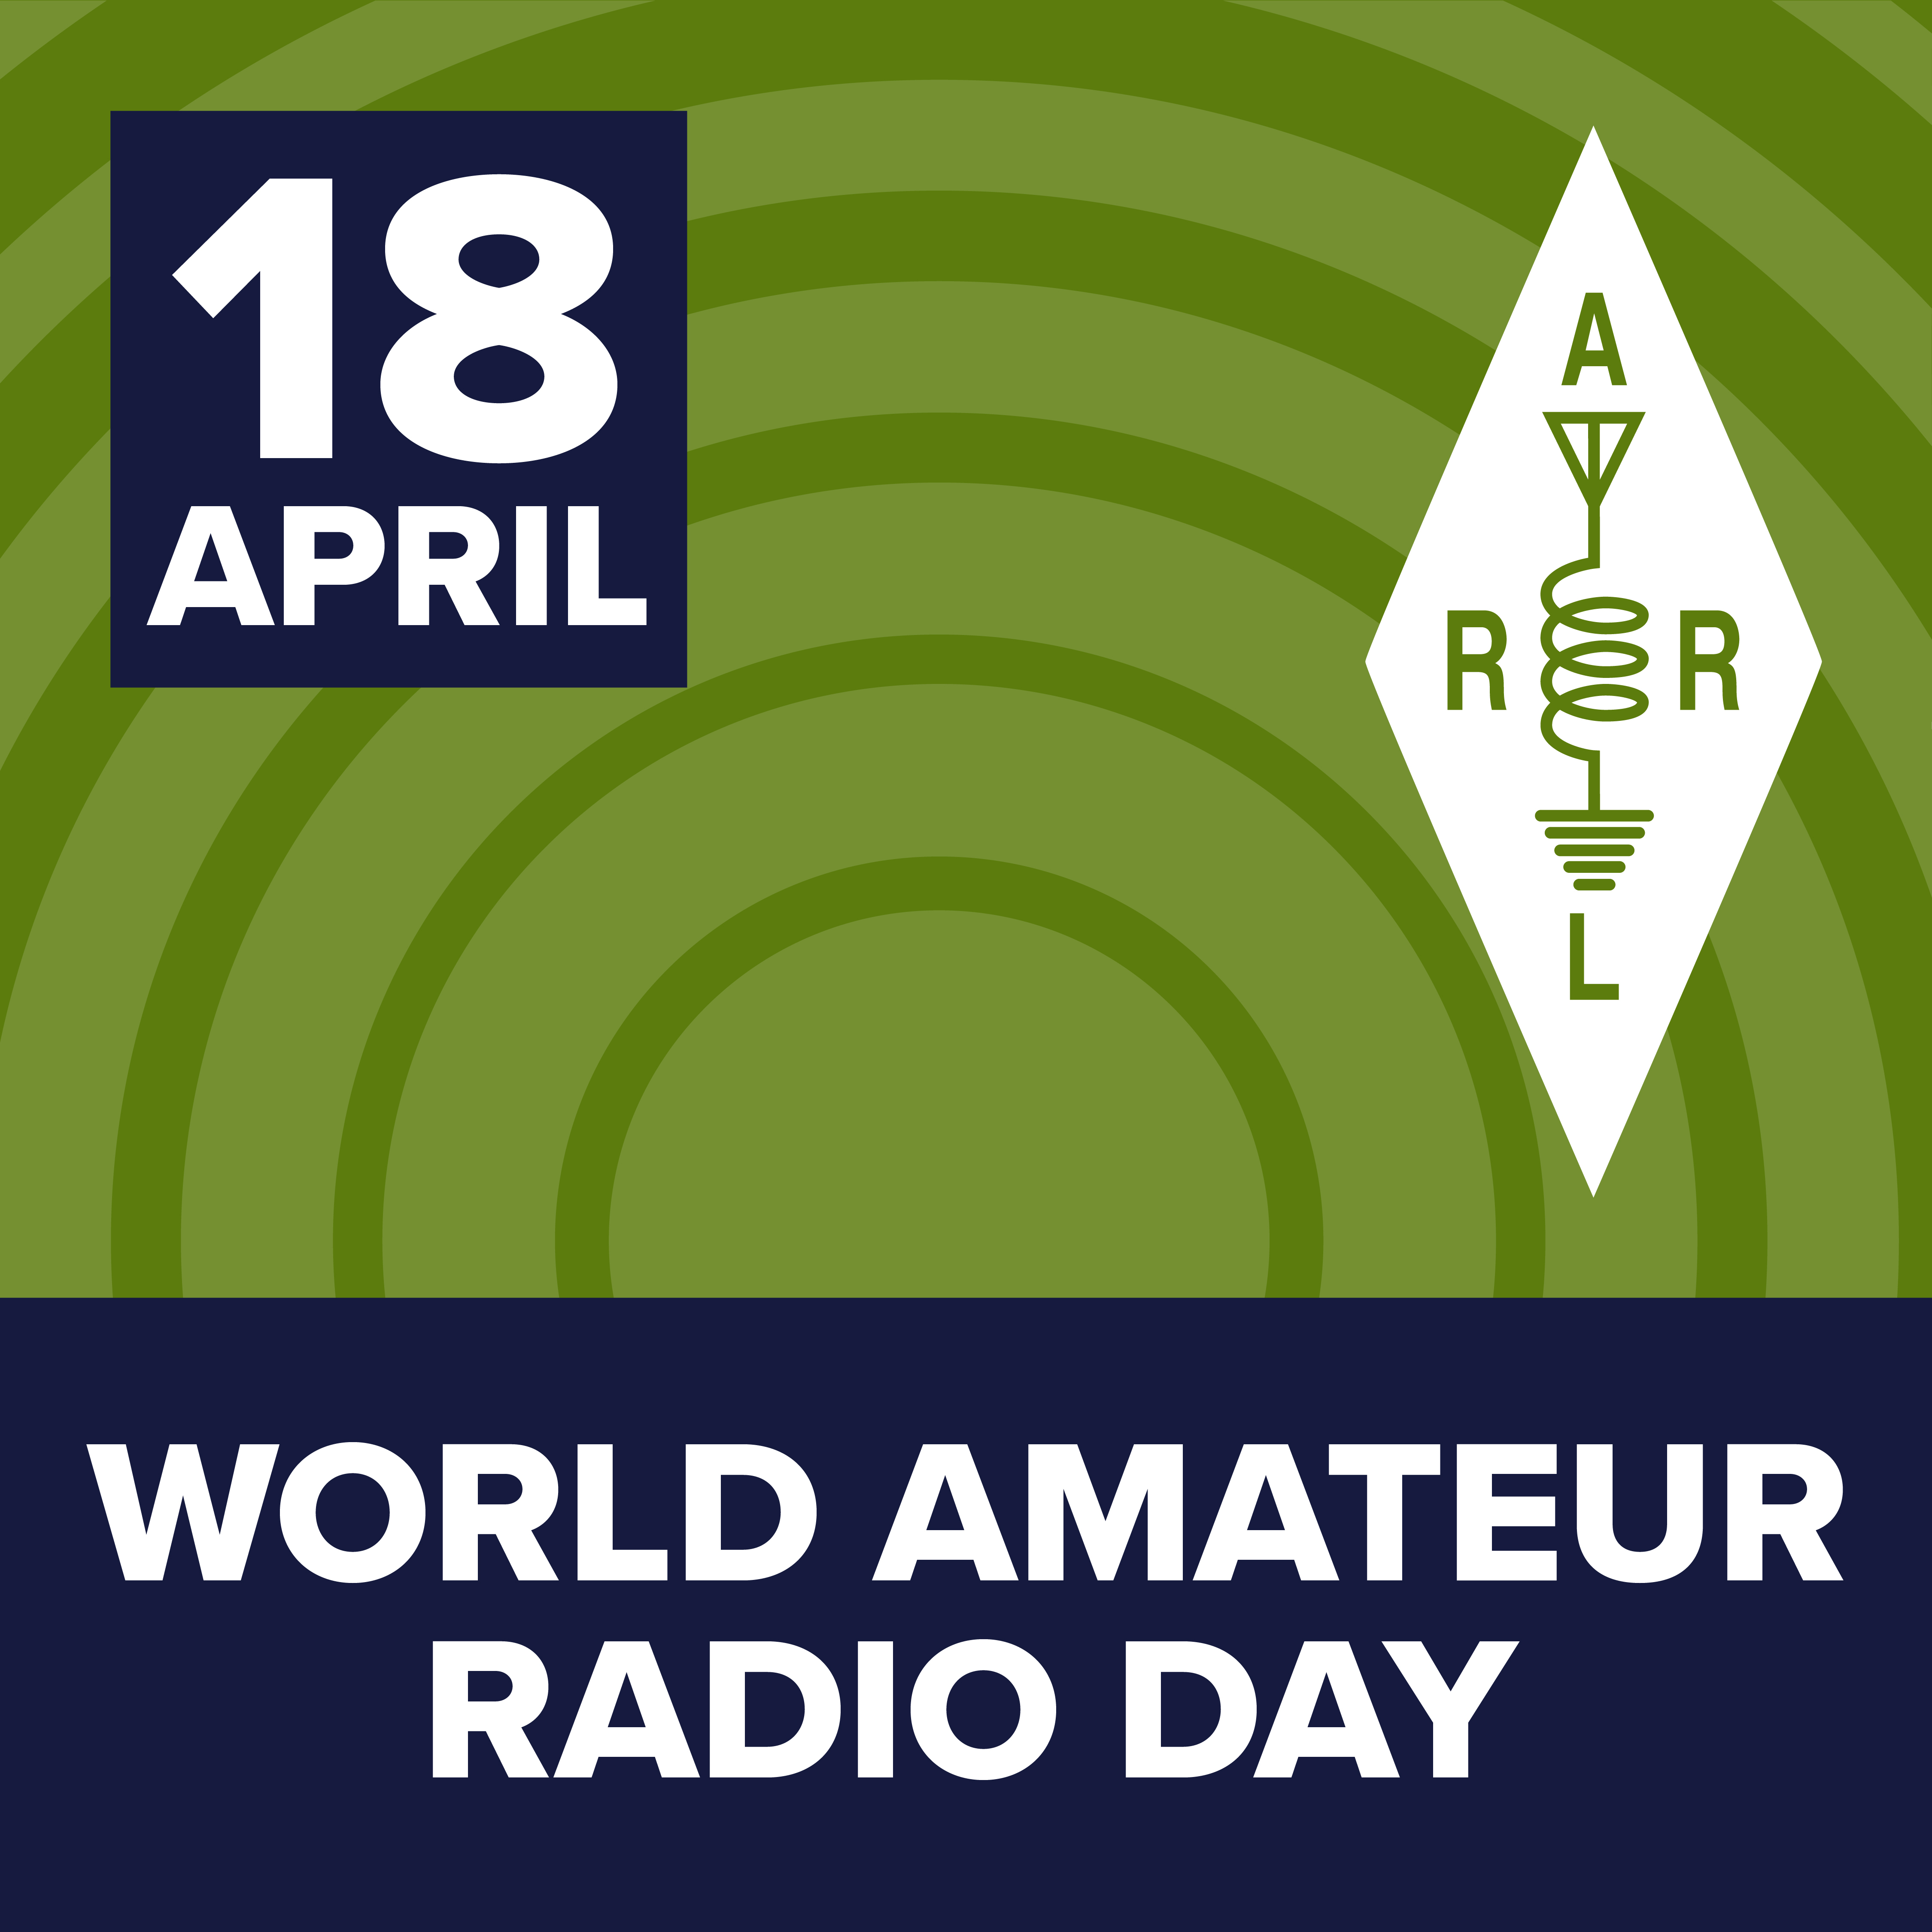 world amateur radio day hot photo